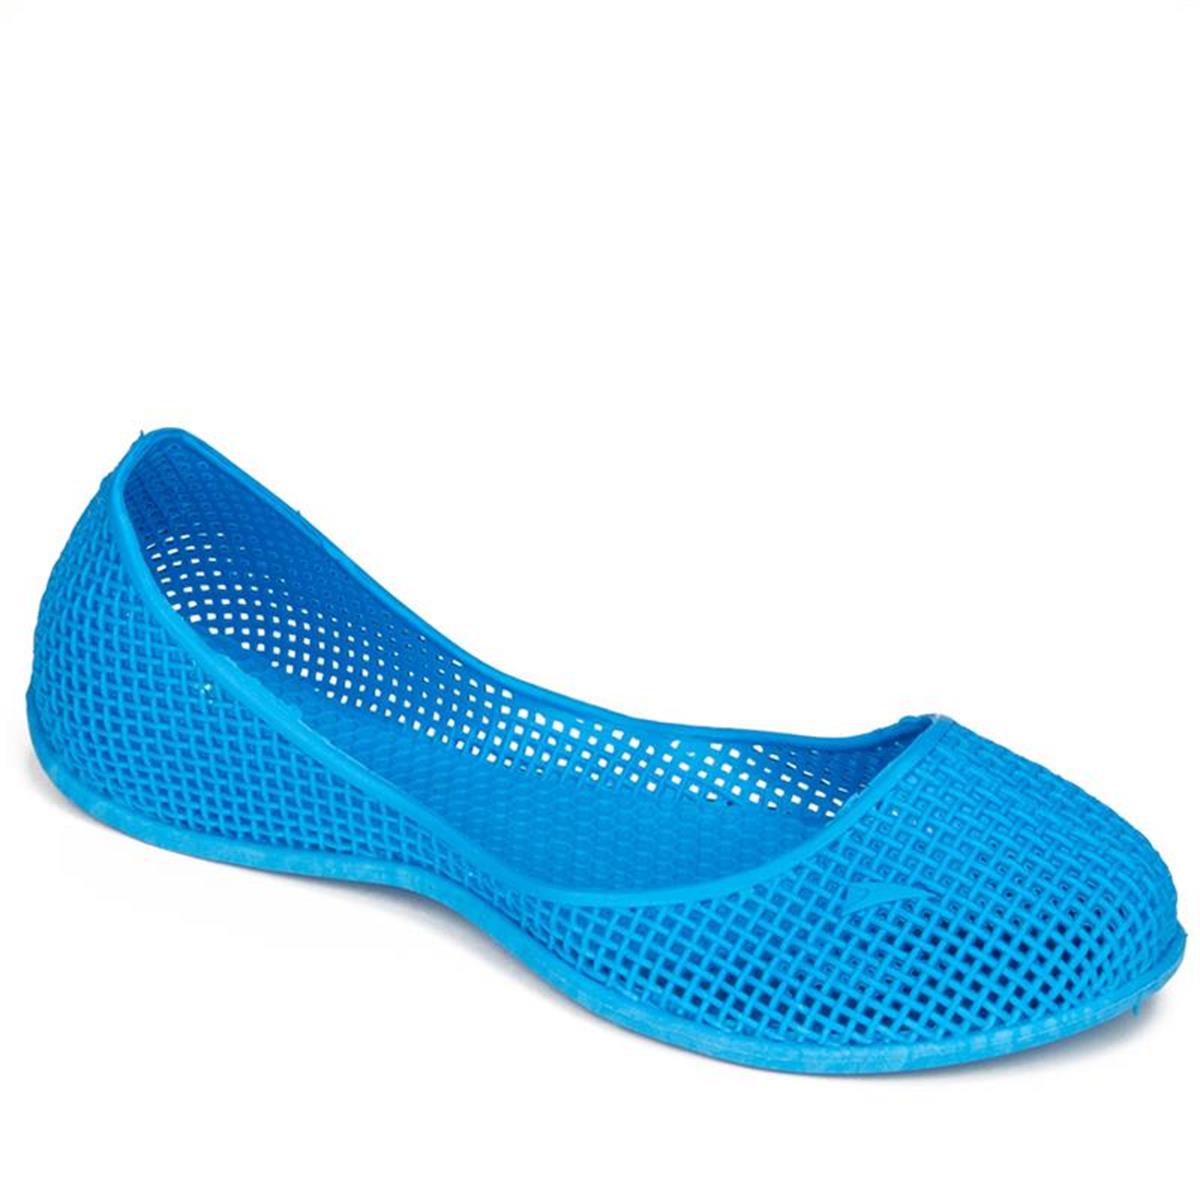 İnox 3 Renk Kadın / Çocuk Havuz Plaj Deniz Ayakkabısı Kaymaz Taban Mavi -  Modafrato